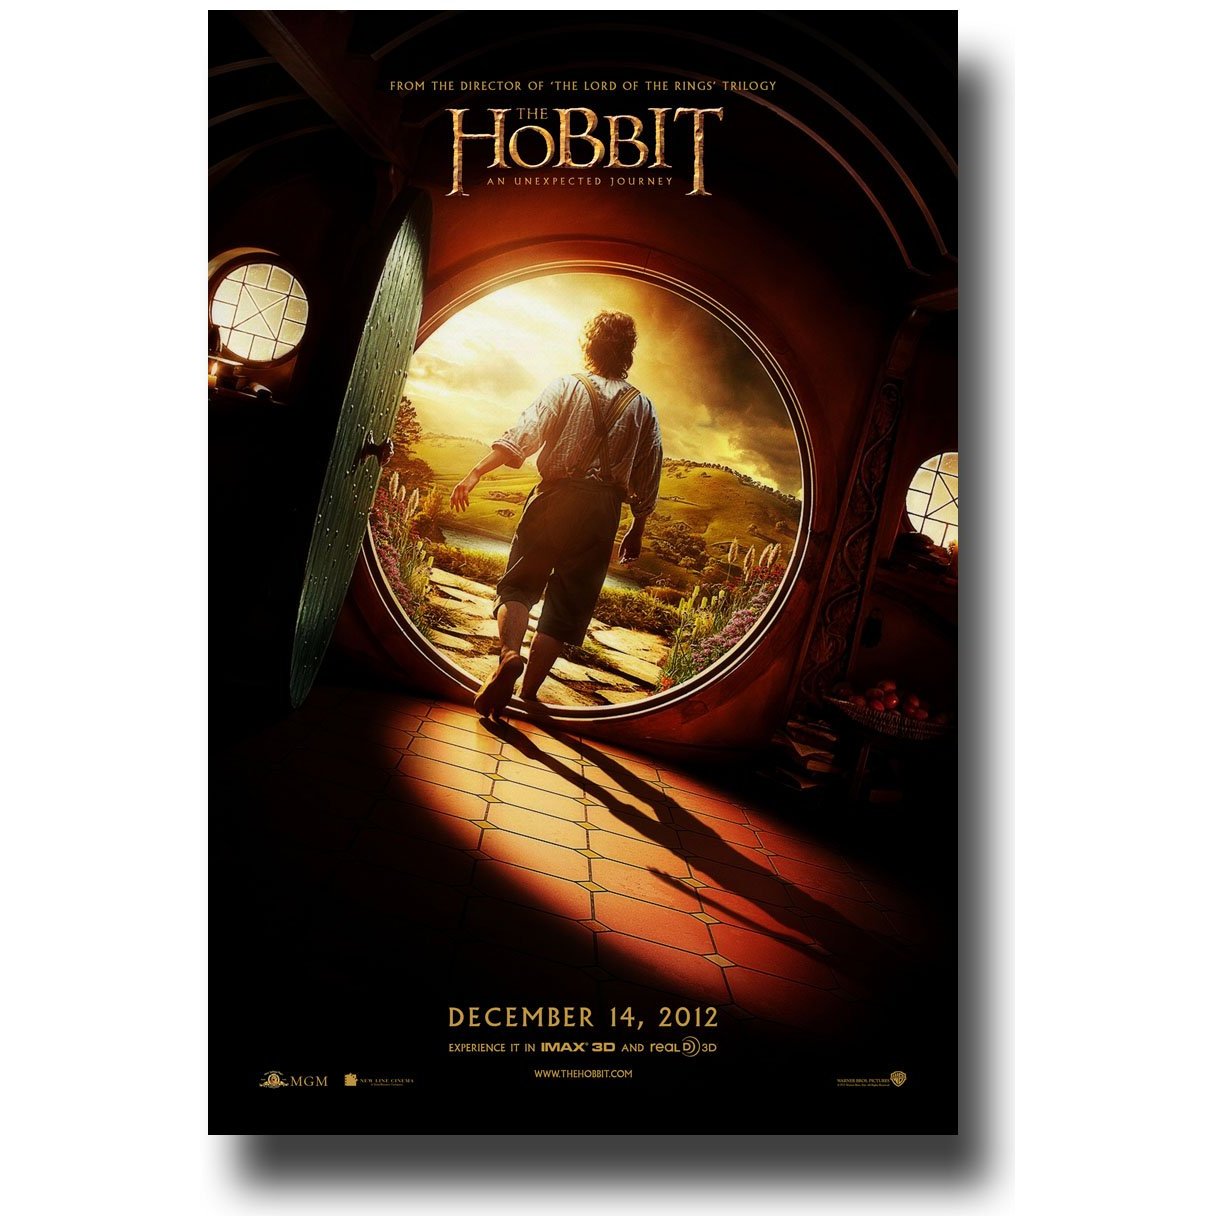 the hobbit movie review- a teens p.o.v.